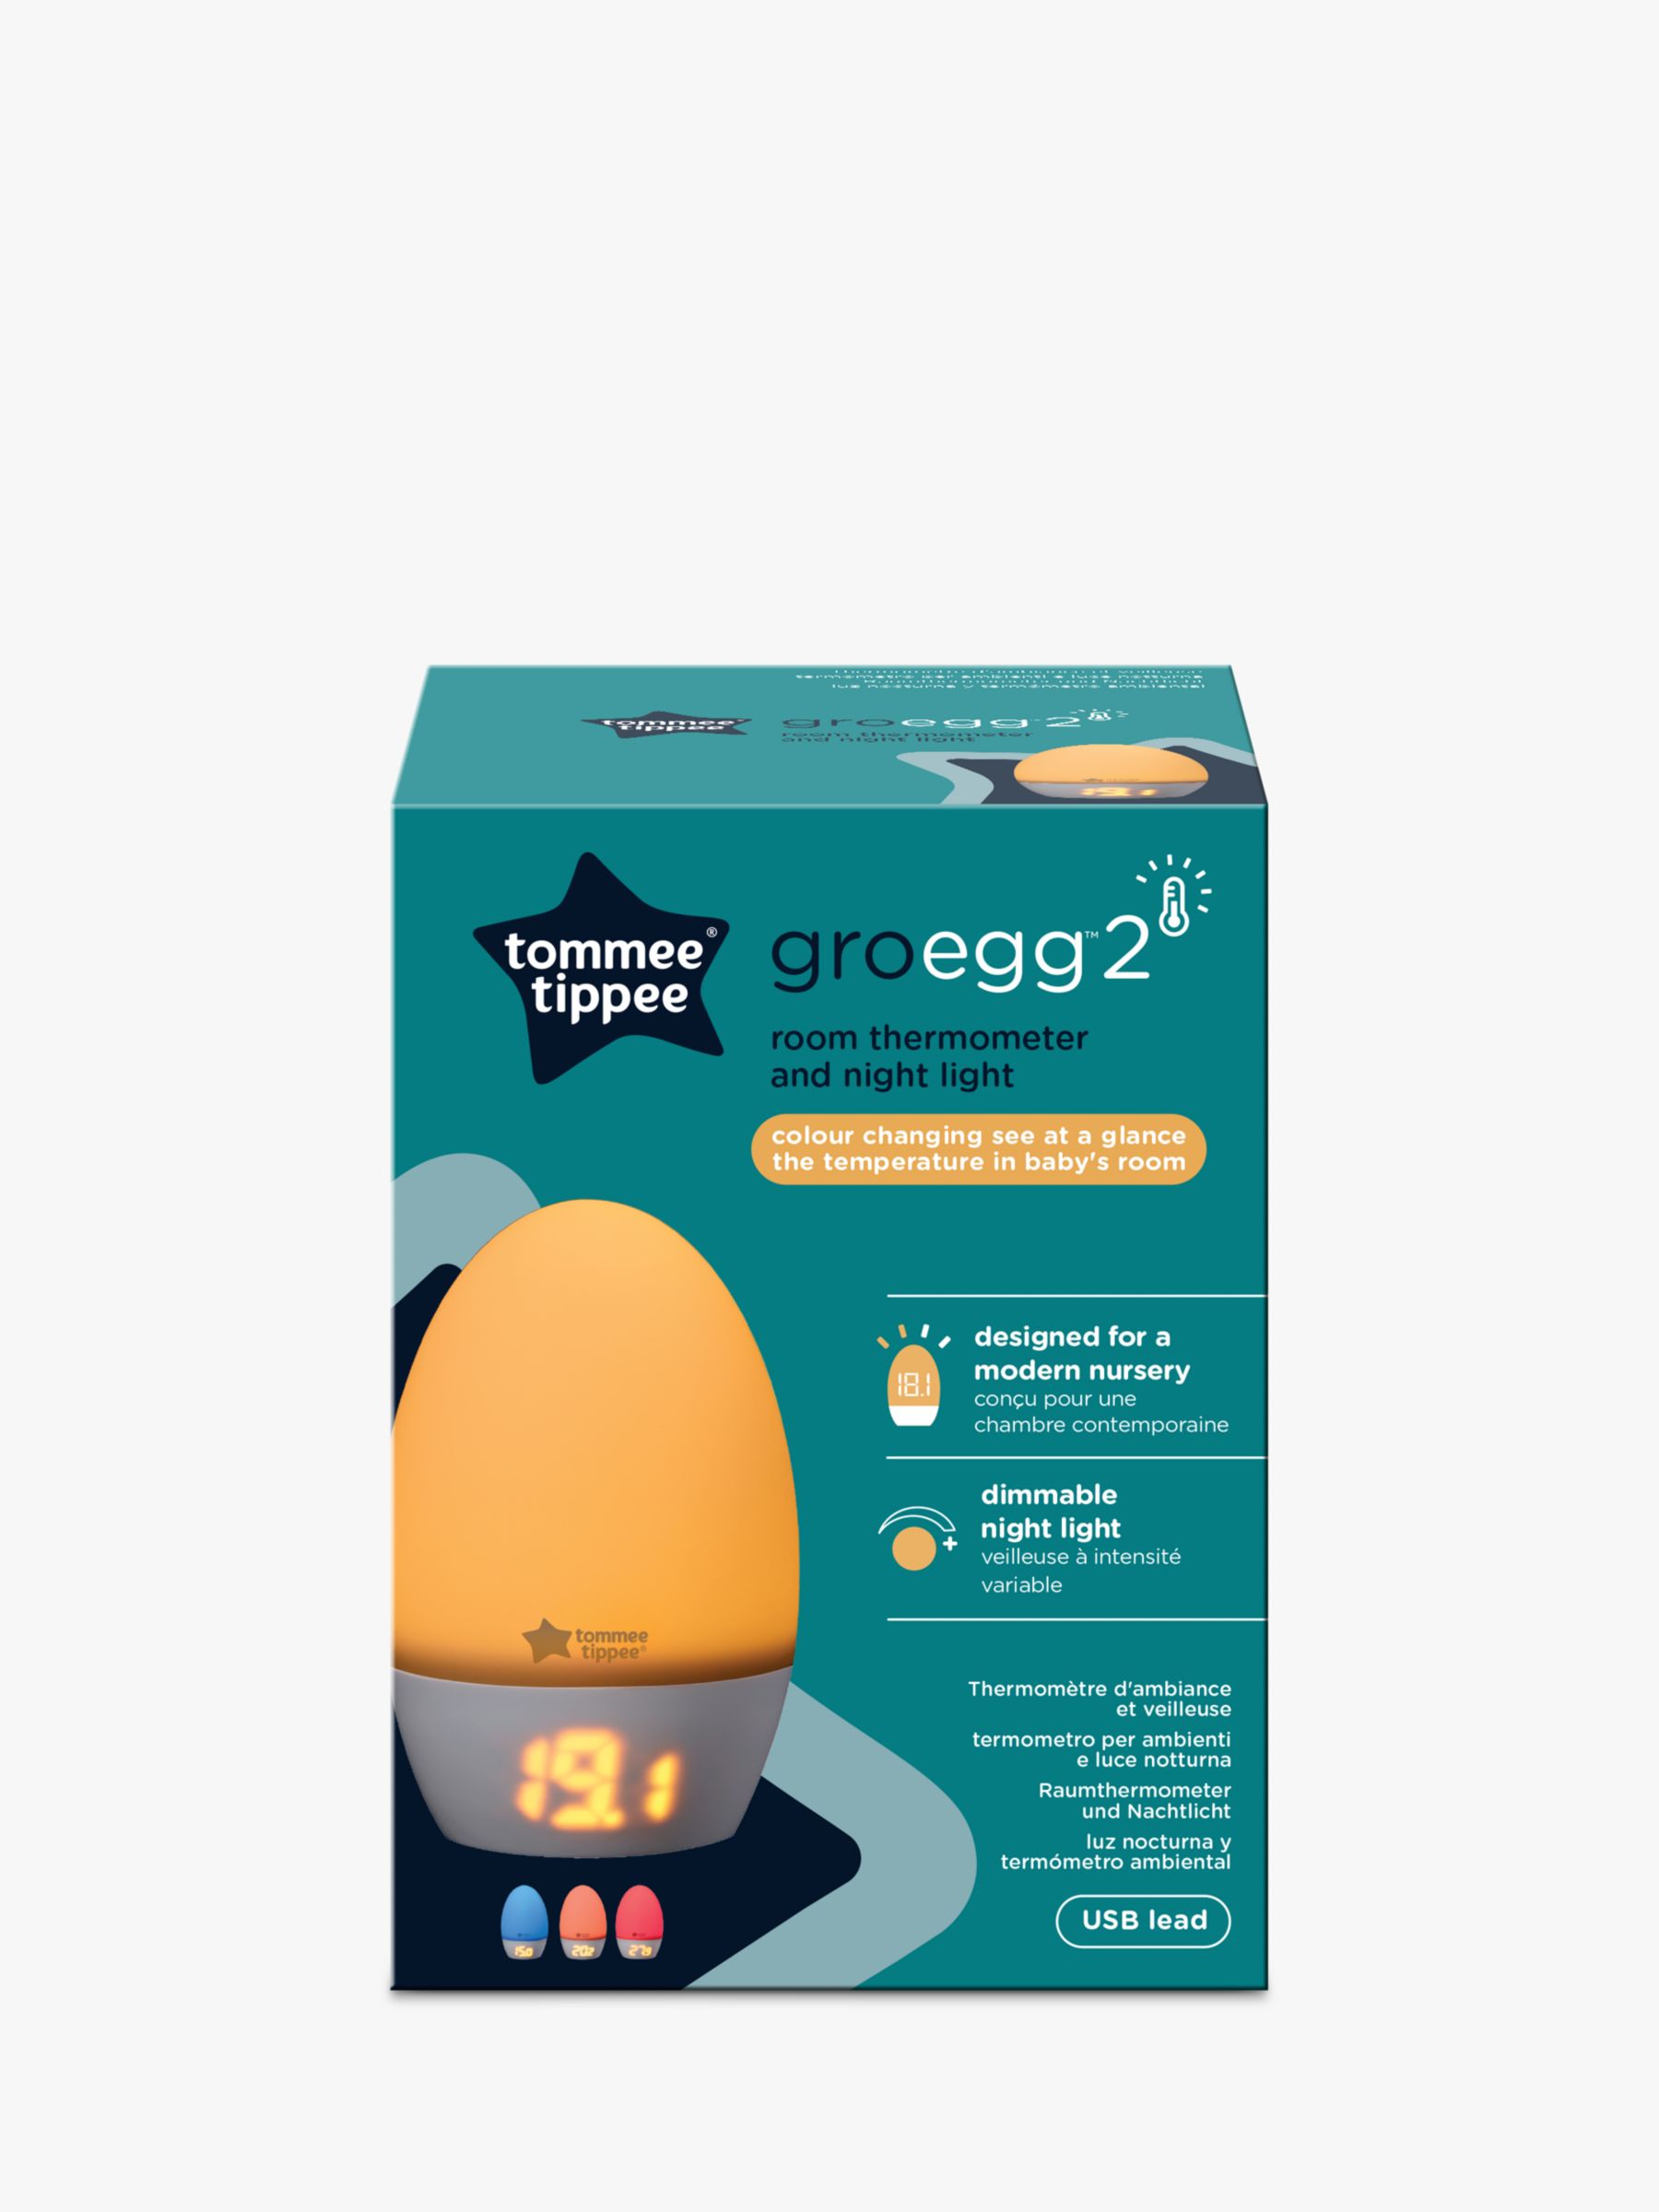 Veilleuse thermomètre numérique gro-egg2 de Tommee tippee sur allobébé